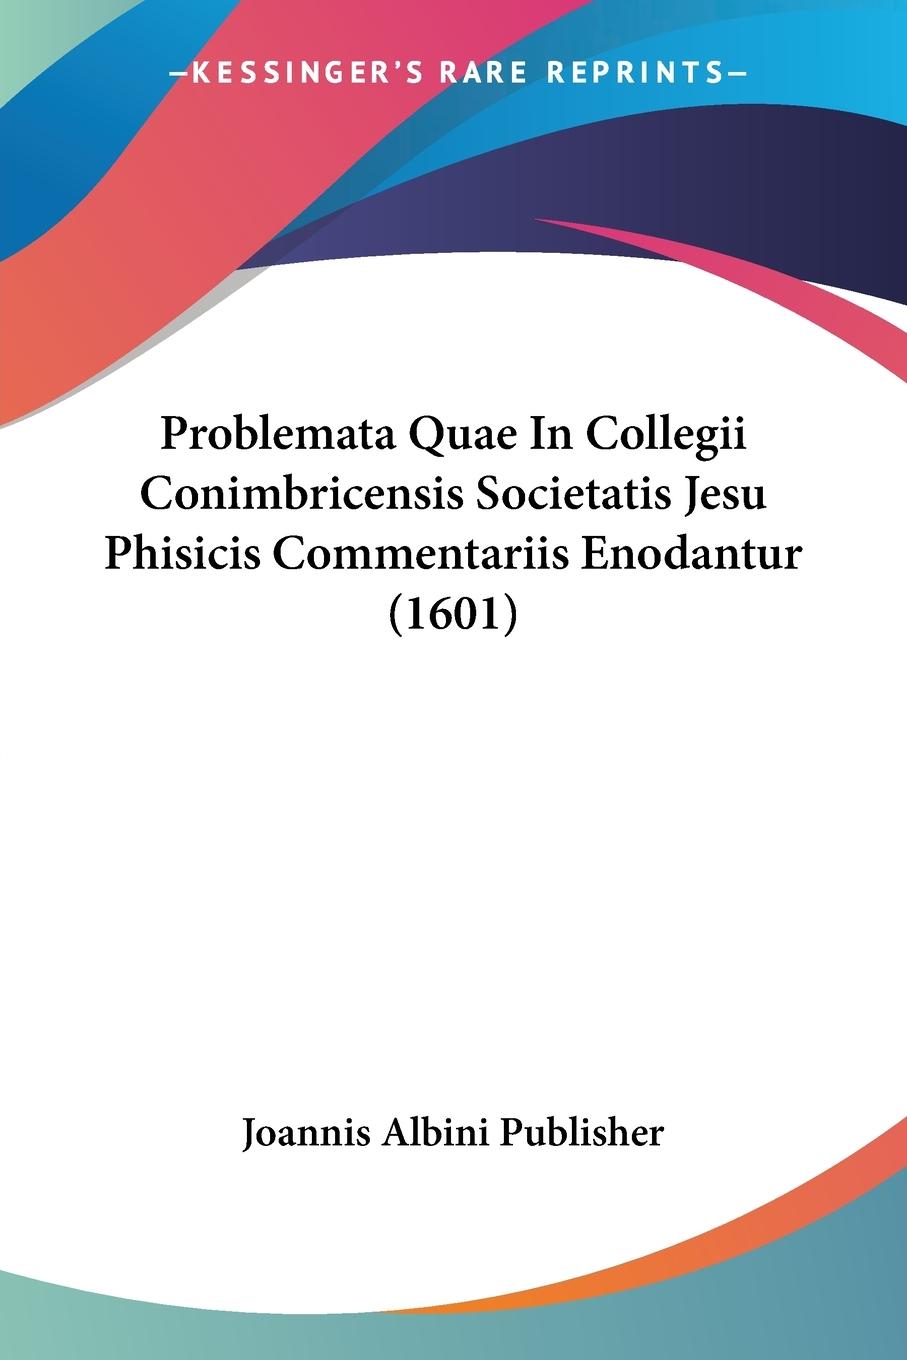 Problemata Quae In Collegii Conimbricensis Societatis Jesu Phisicis Commentariis Enodantur (1601) - Joannis Albini Publisher